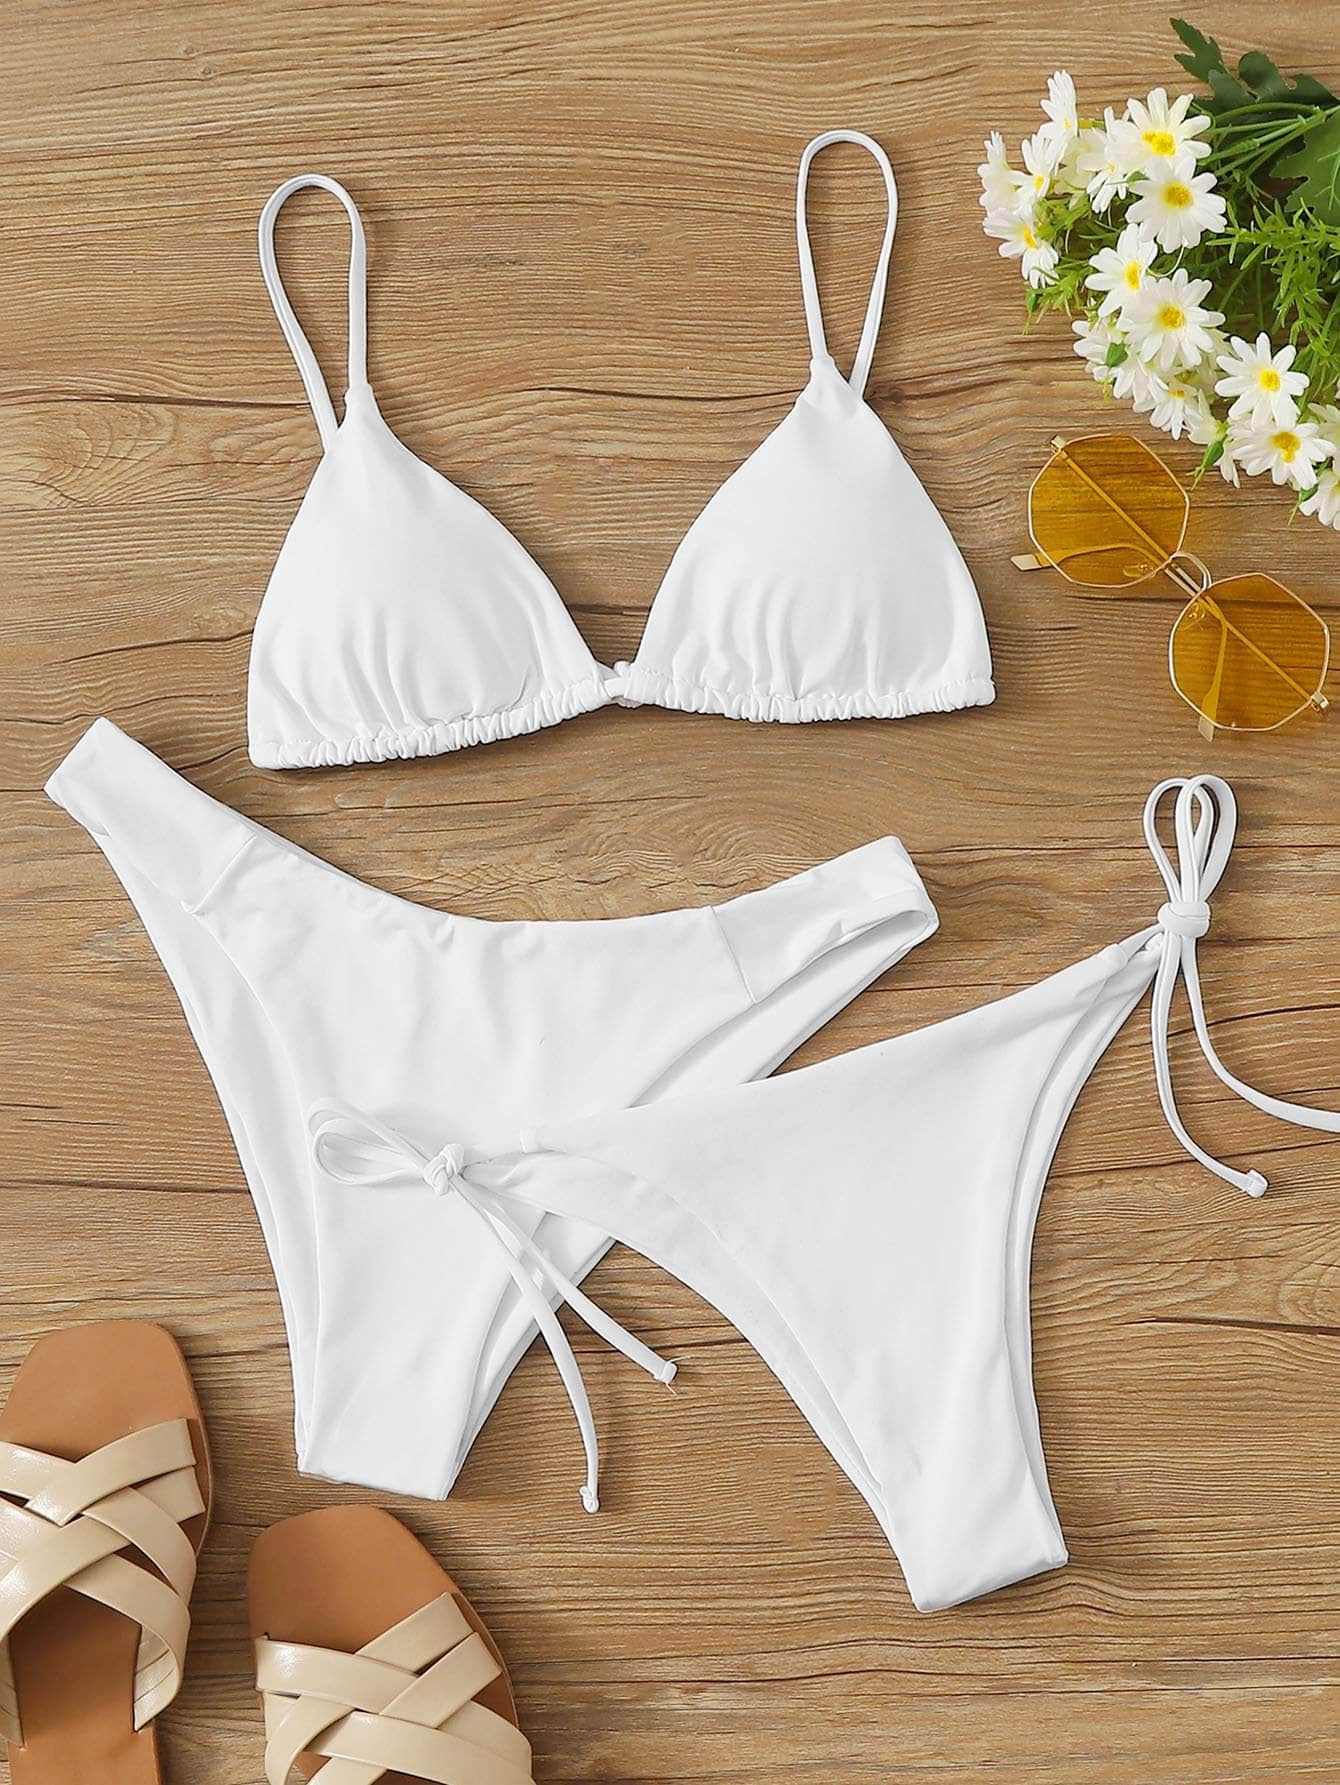 Blanco / XS 3 piezas vestido de baño bikini con cordón lateral triángulo